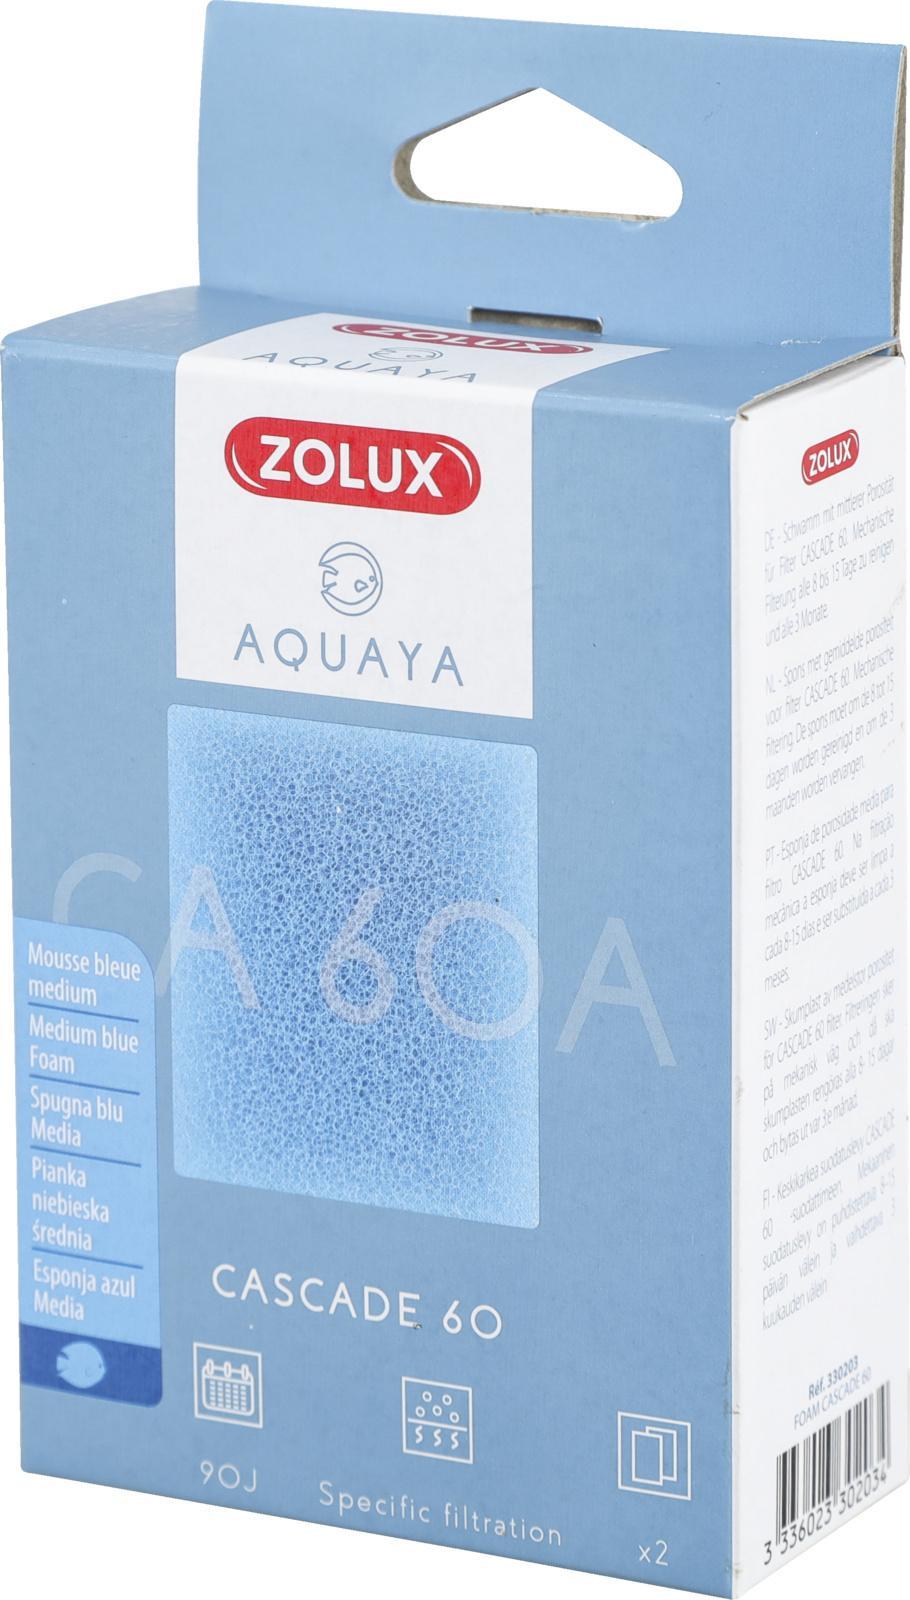 Zolux ZOLUX AQUAYA Wklad gabka Cascade 60 7544718 (3336023302034) akvārija filtrs